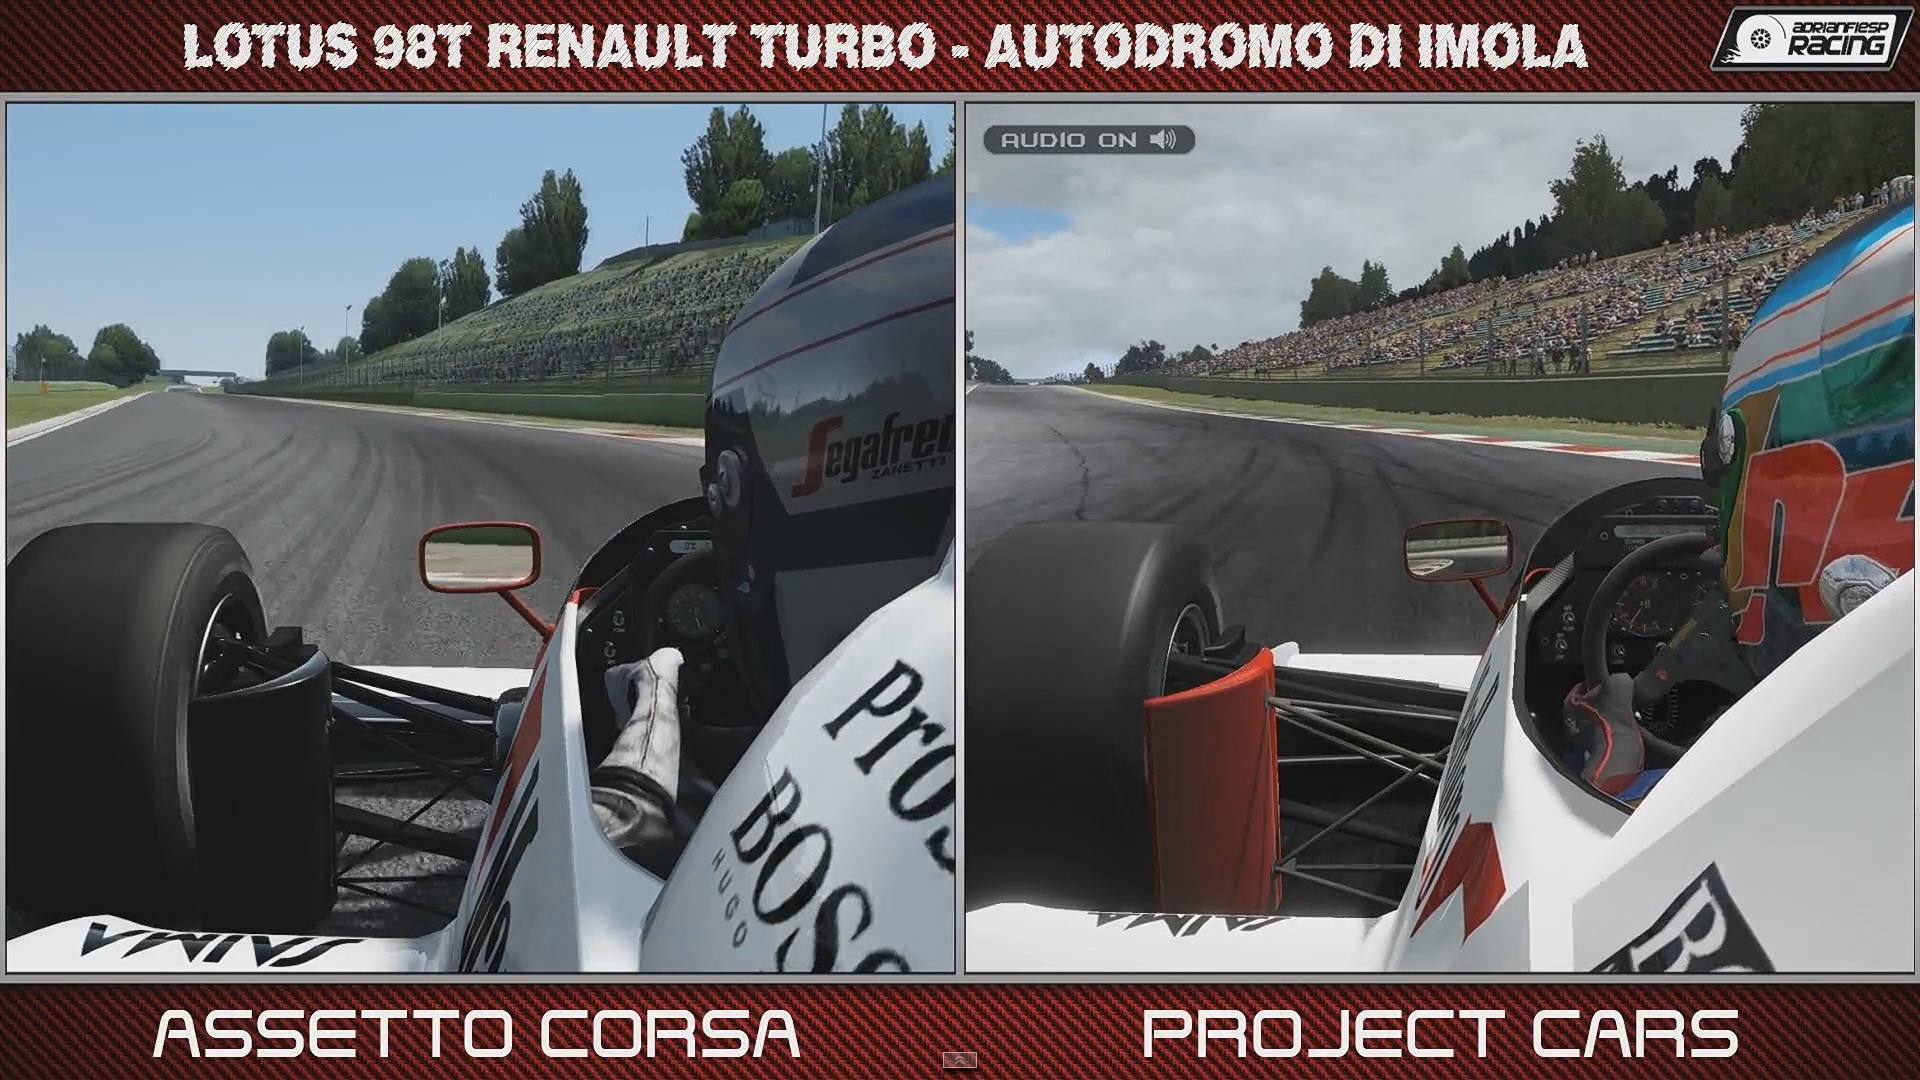 project cars 2 vs assetto corsa